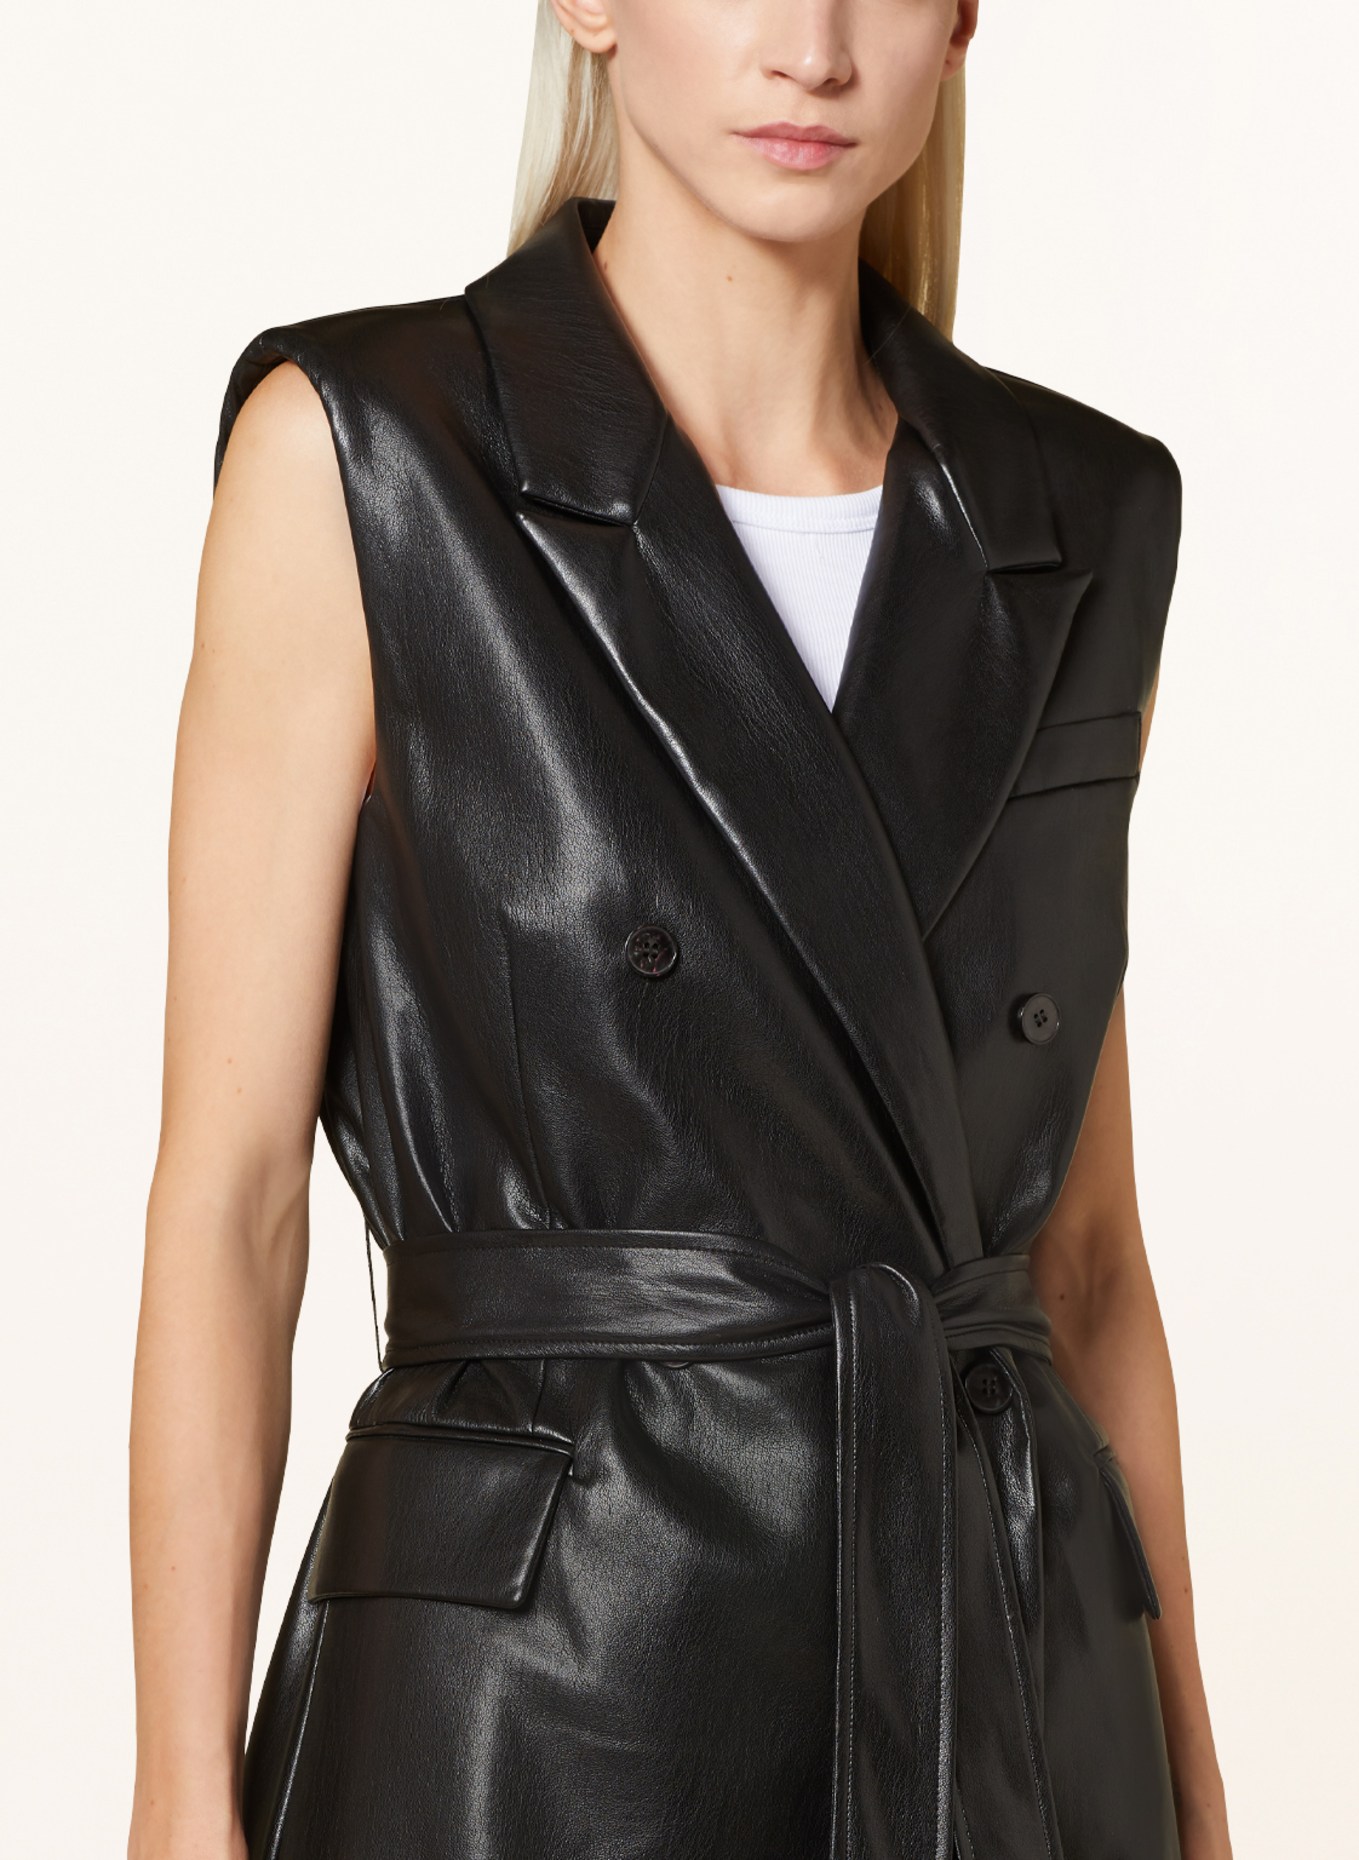 MRS & HUGS Blazer vest in leather look, Color: BLACK (Image 4)